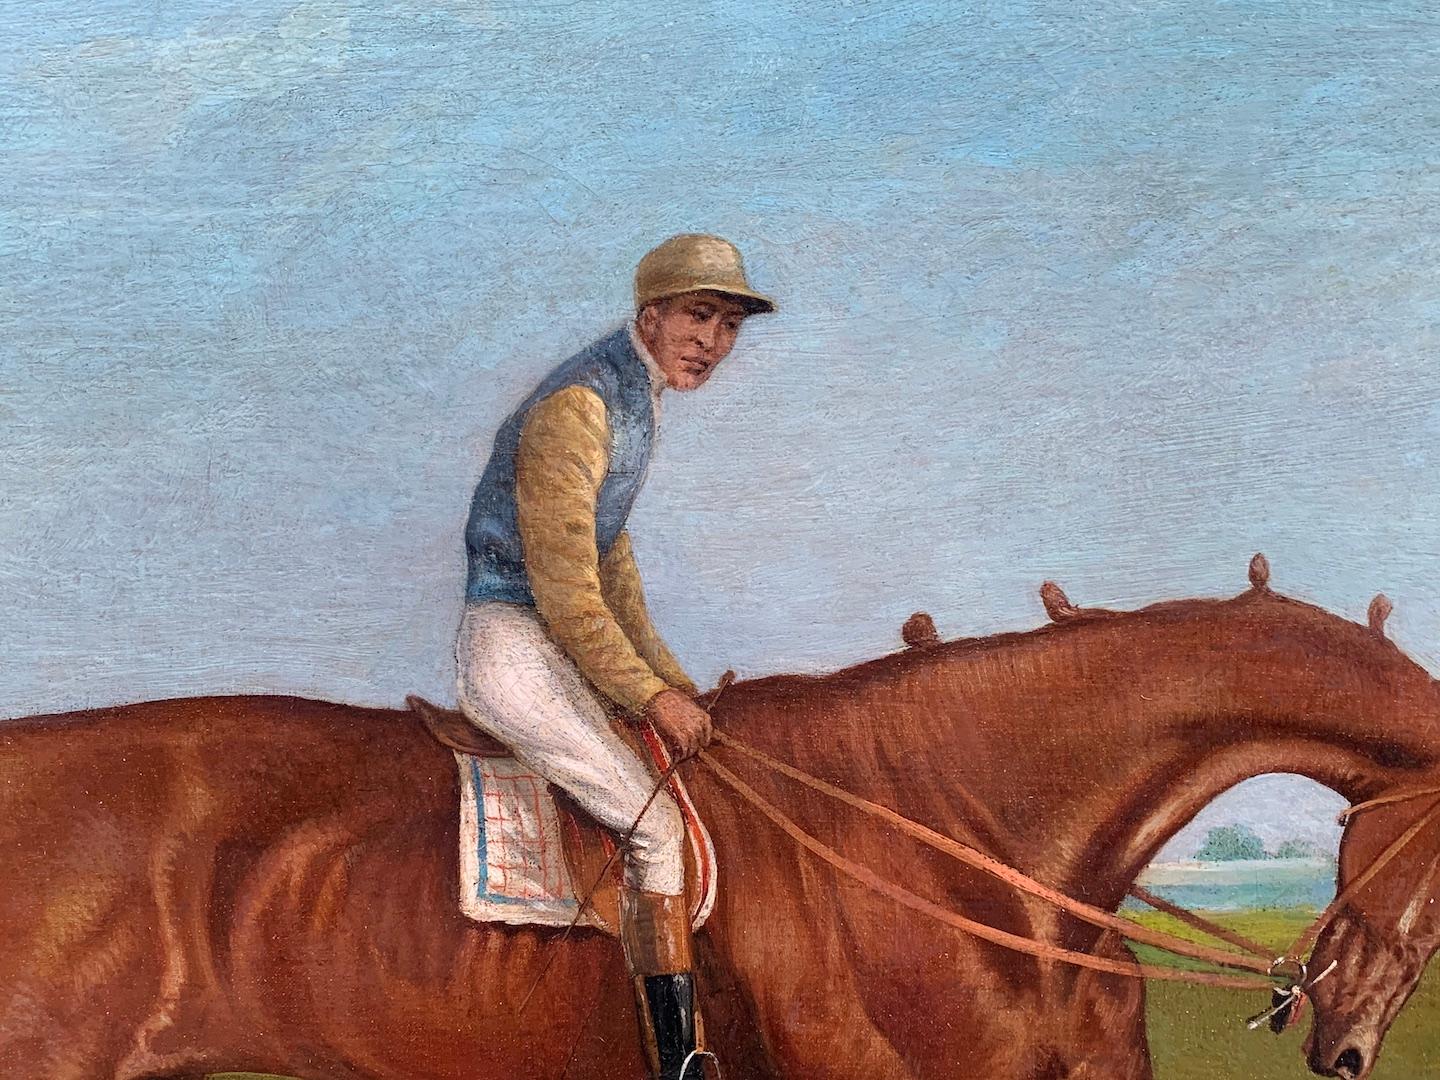  Antike englische Pferderennenszene aus dem 19. Jahrhundert in einer Landschaft mit Jockey up (Viktorianisch), Painting, von John Frederick Herring Sr.